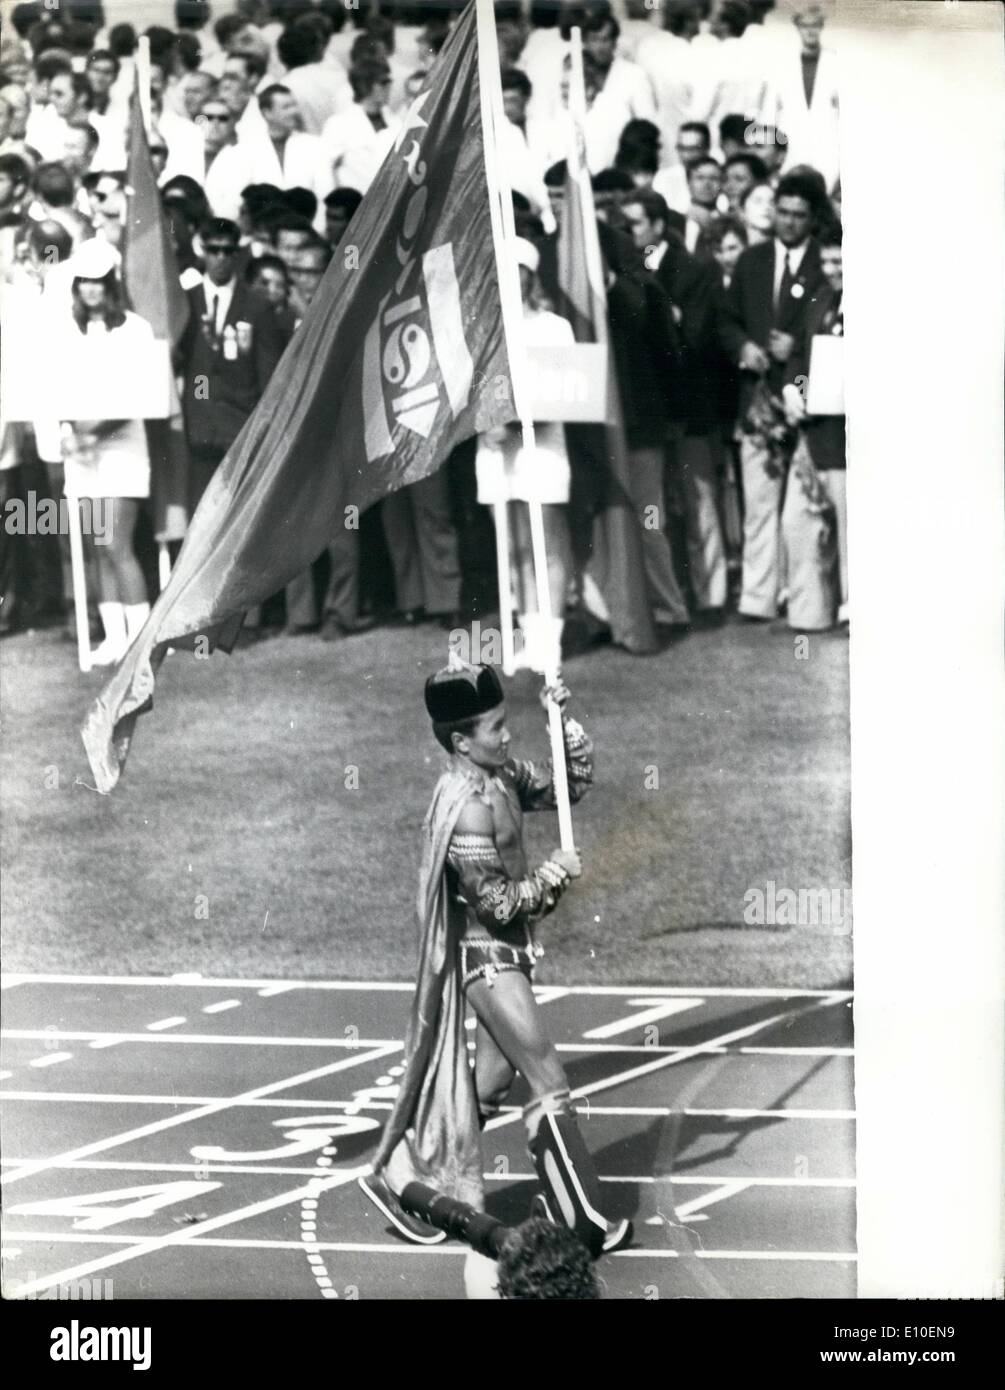 Agosto 08, 1972 - Cerimonia di Apertura della 2Oth in occasione dei Giochi  Olimpici di Monaco di Baviera sfilata di squadra allo Stadio Olimpico.:  foto mostra il portabandiera della Mongolia in costume